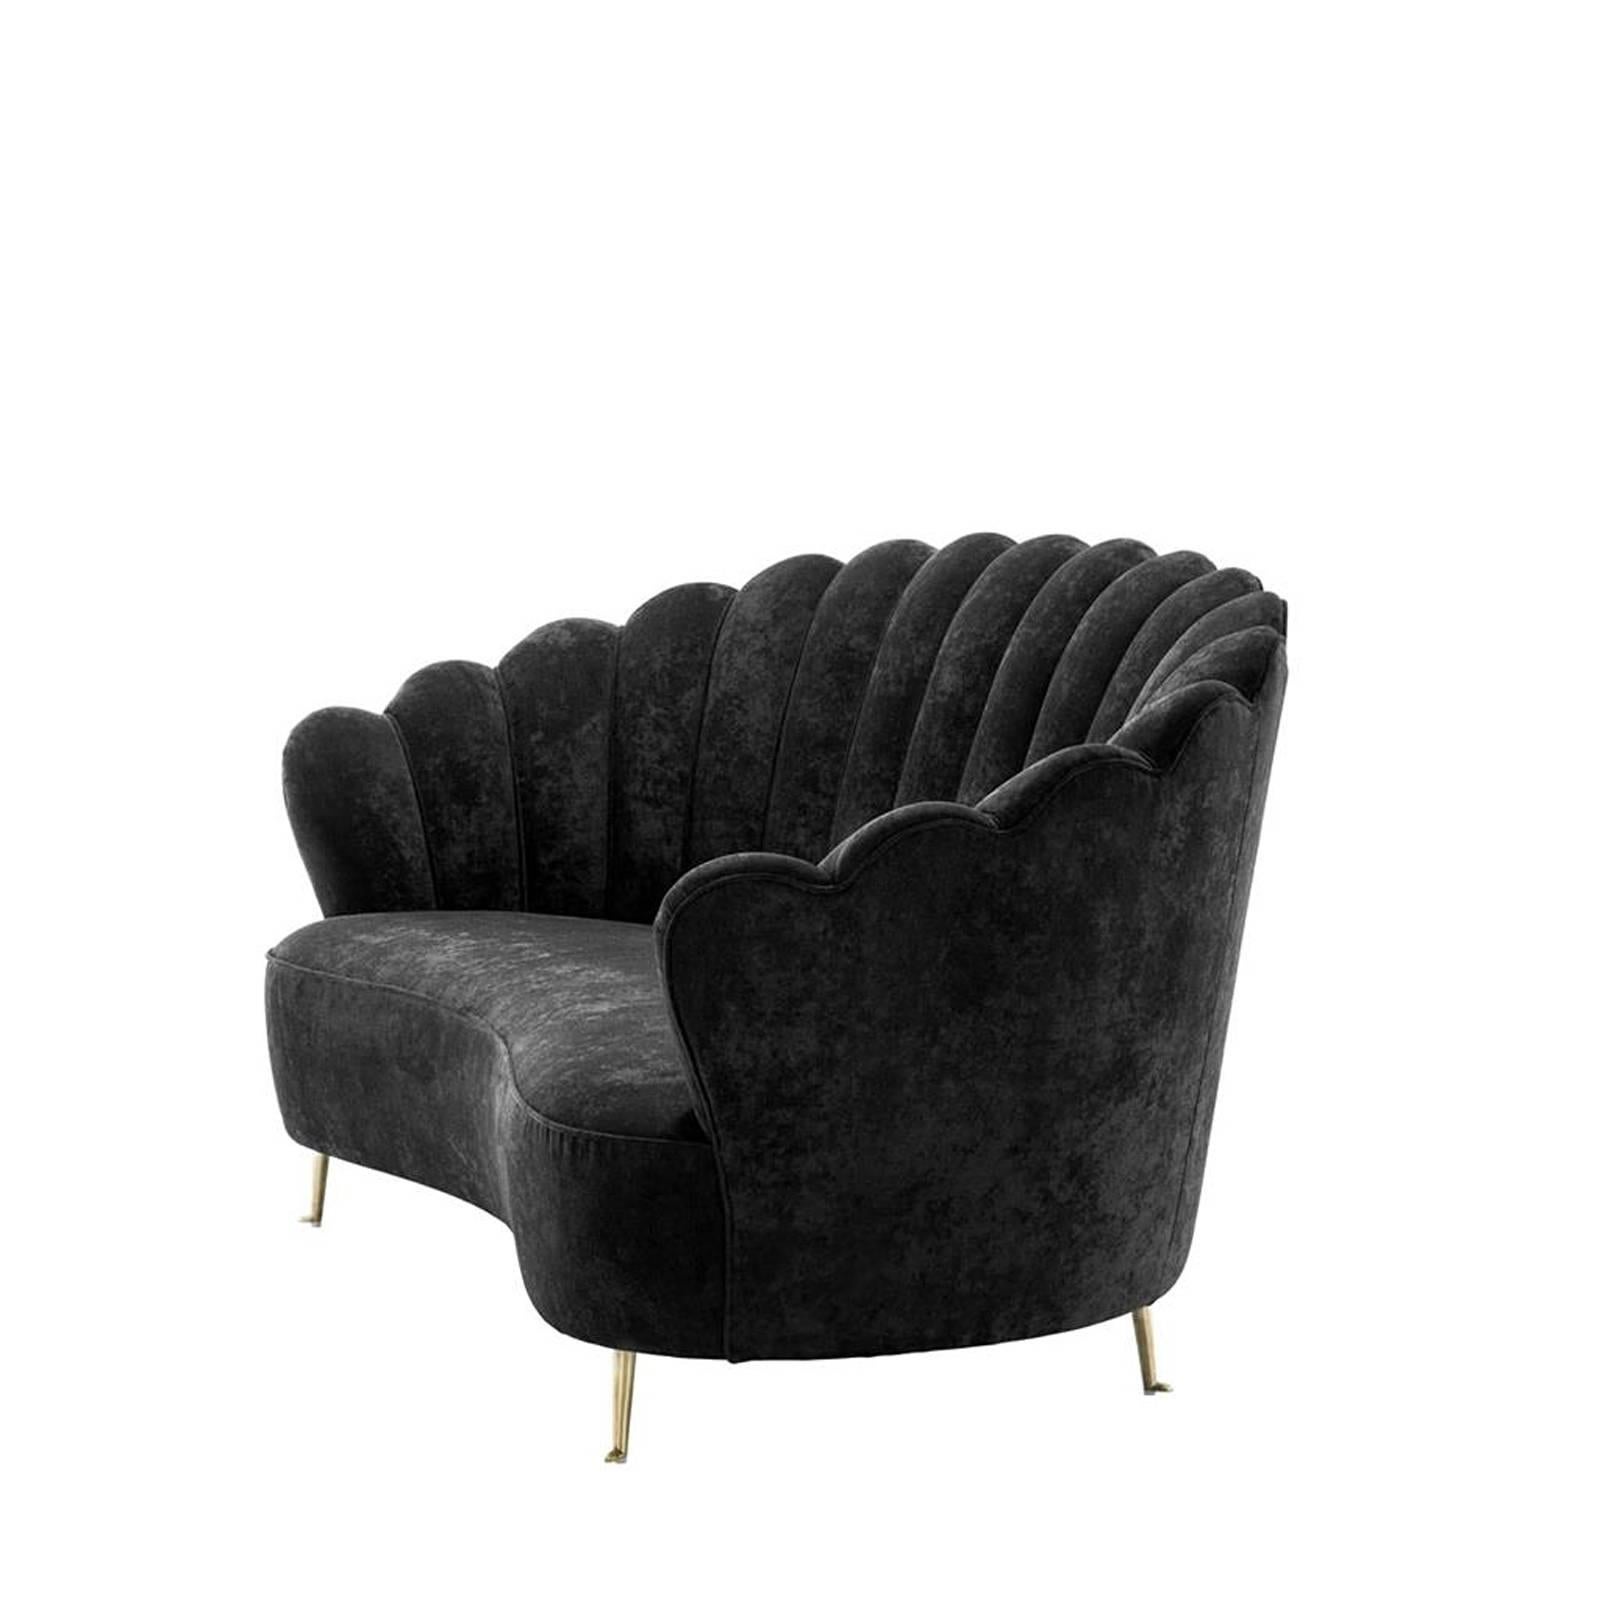 Sofa Shell in black velvet fabric,
on polished brass legs.
